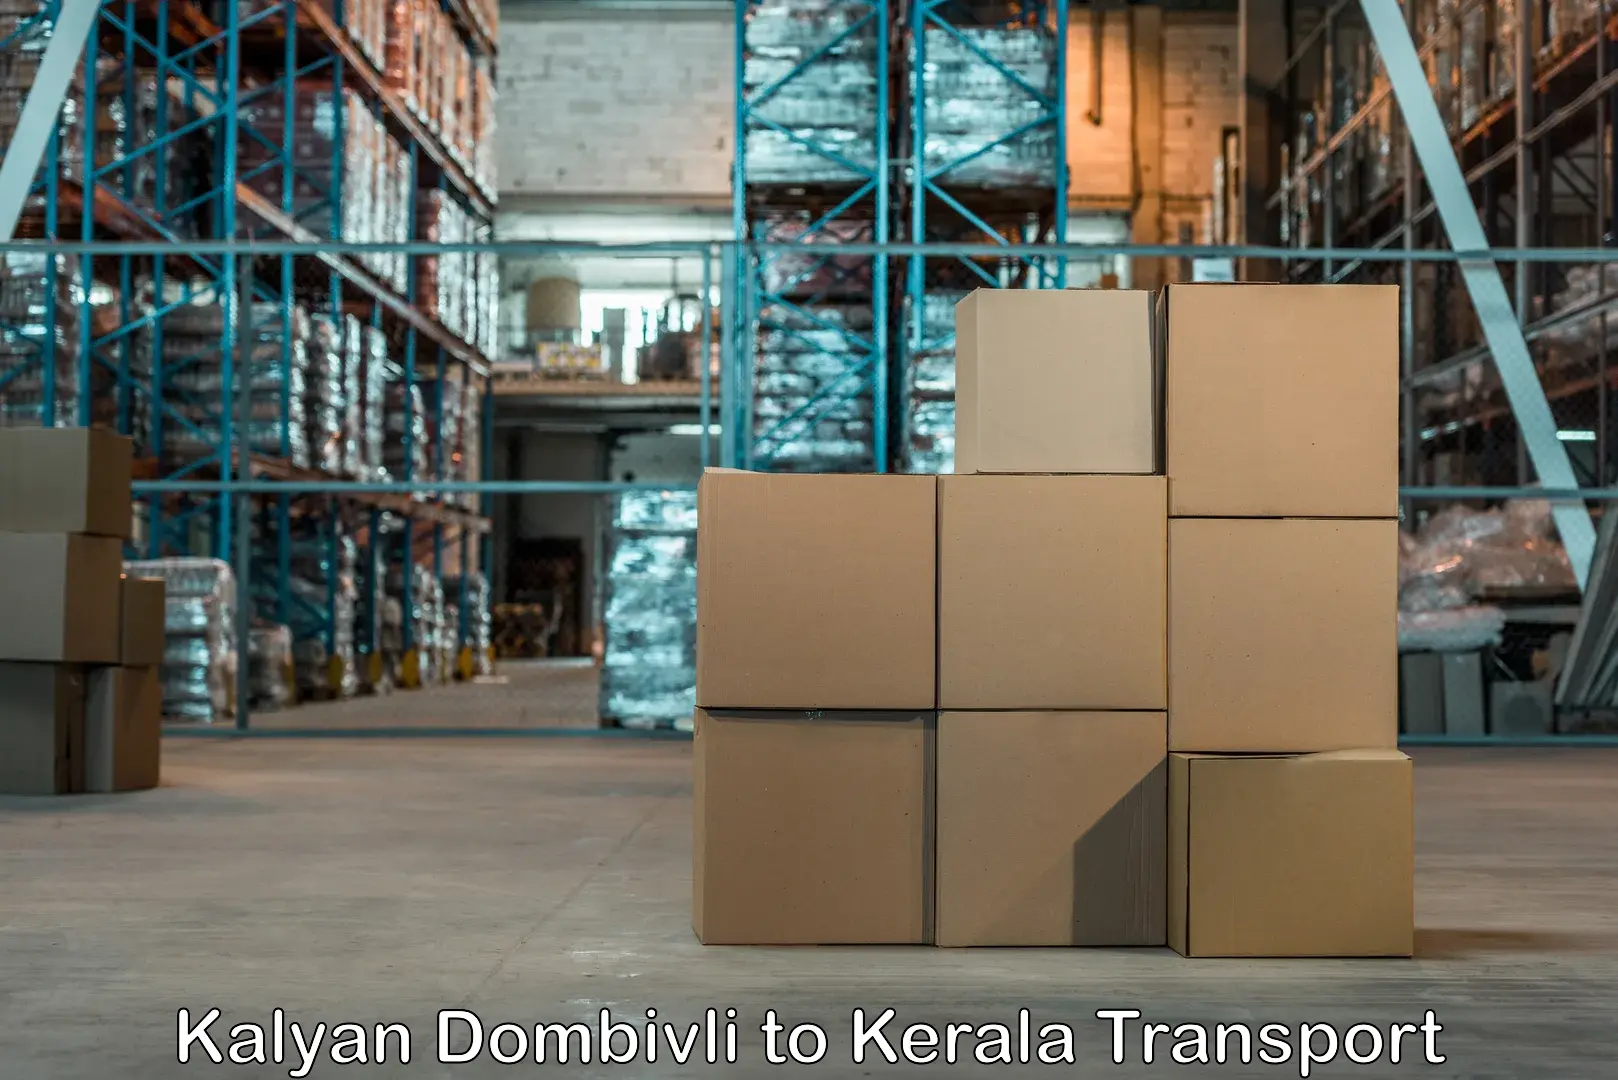 Nearest transport service Kalyan Dombivli to Cochin University of Science and Technology